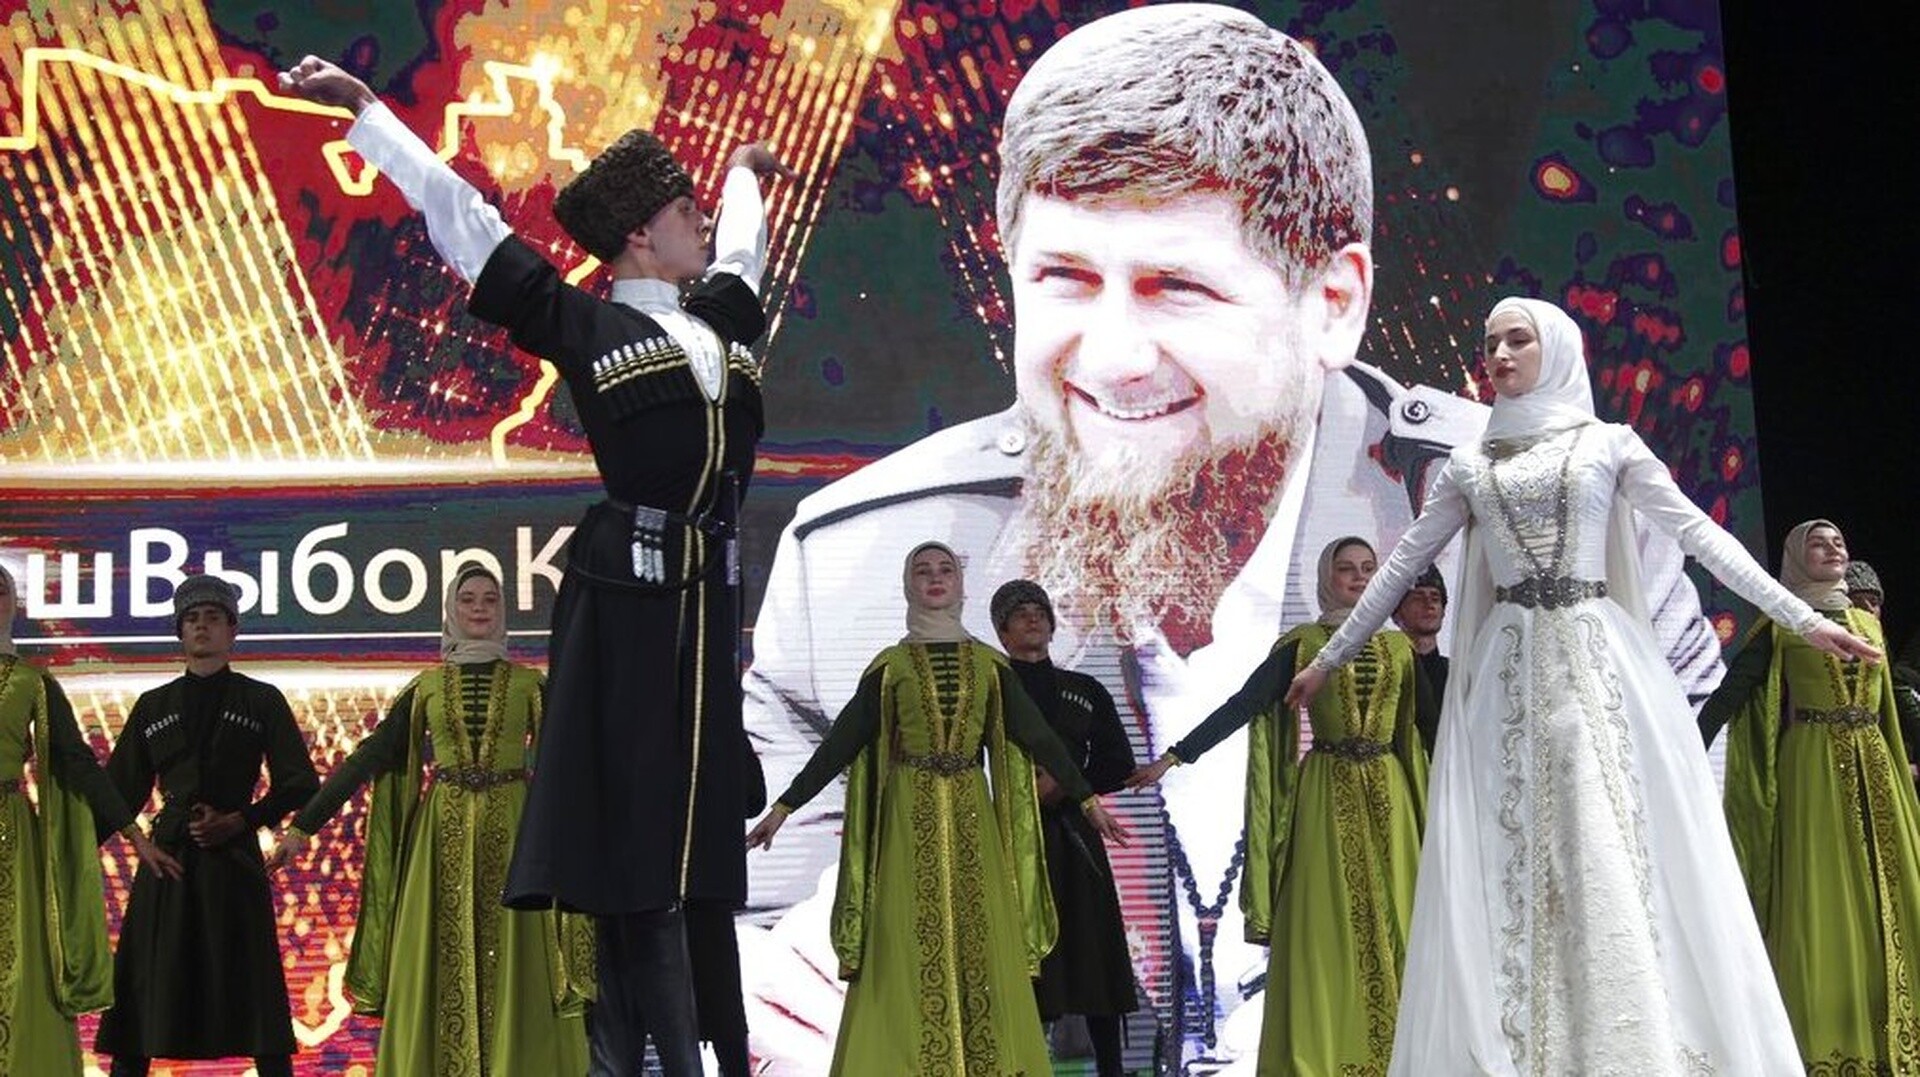 Τσετσενία: Επιβάλλει συγκεκριμένο... tempo στη μουσική  - Απαγορεύει τα πολύ αργά ή γρήγορα κομμάτια